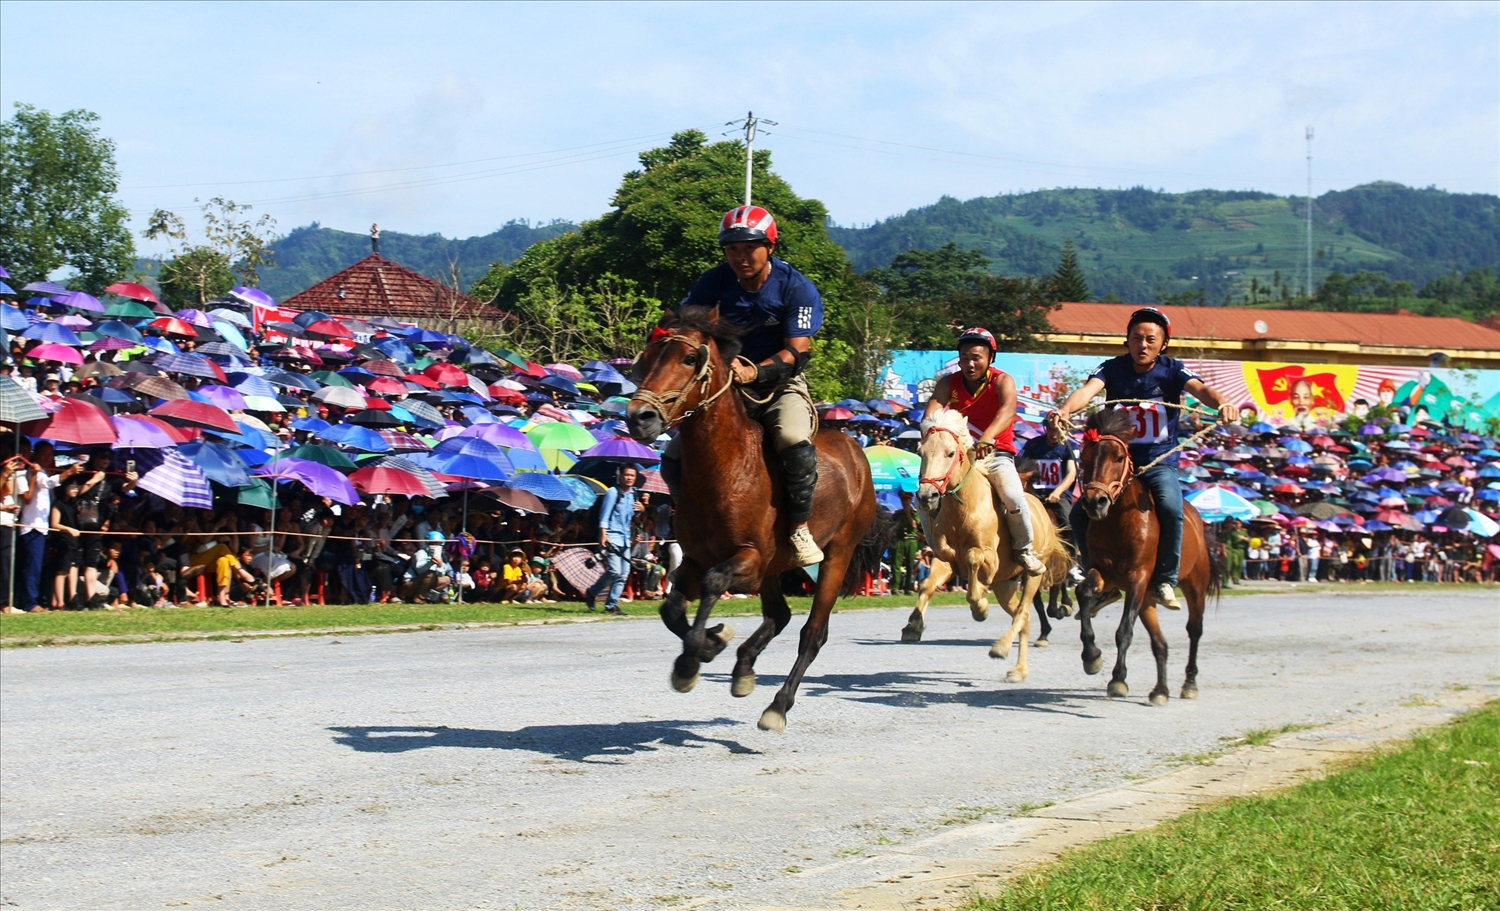 Lễ hội đua ngựa truyền thống Bắc Hà thu hút hàng vạn du khách trong và ngoài nước đến xem và cổ vũ